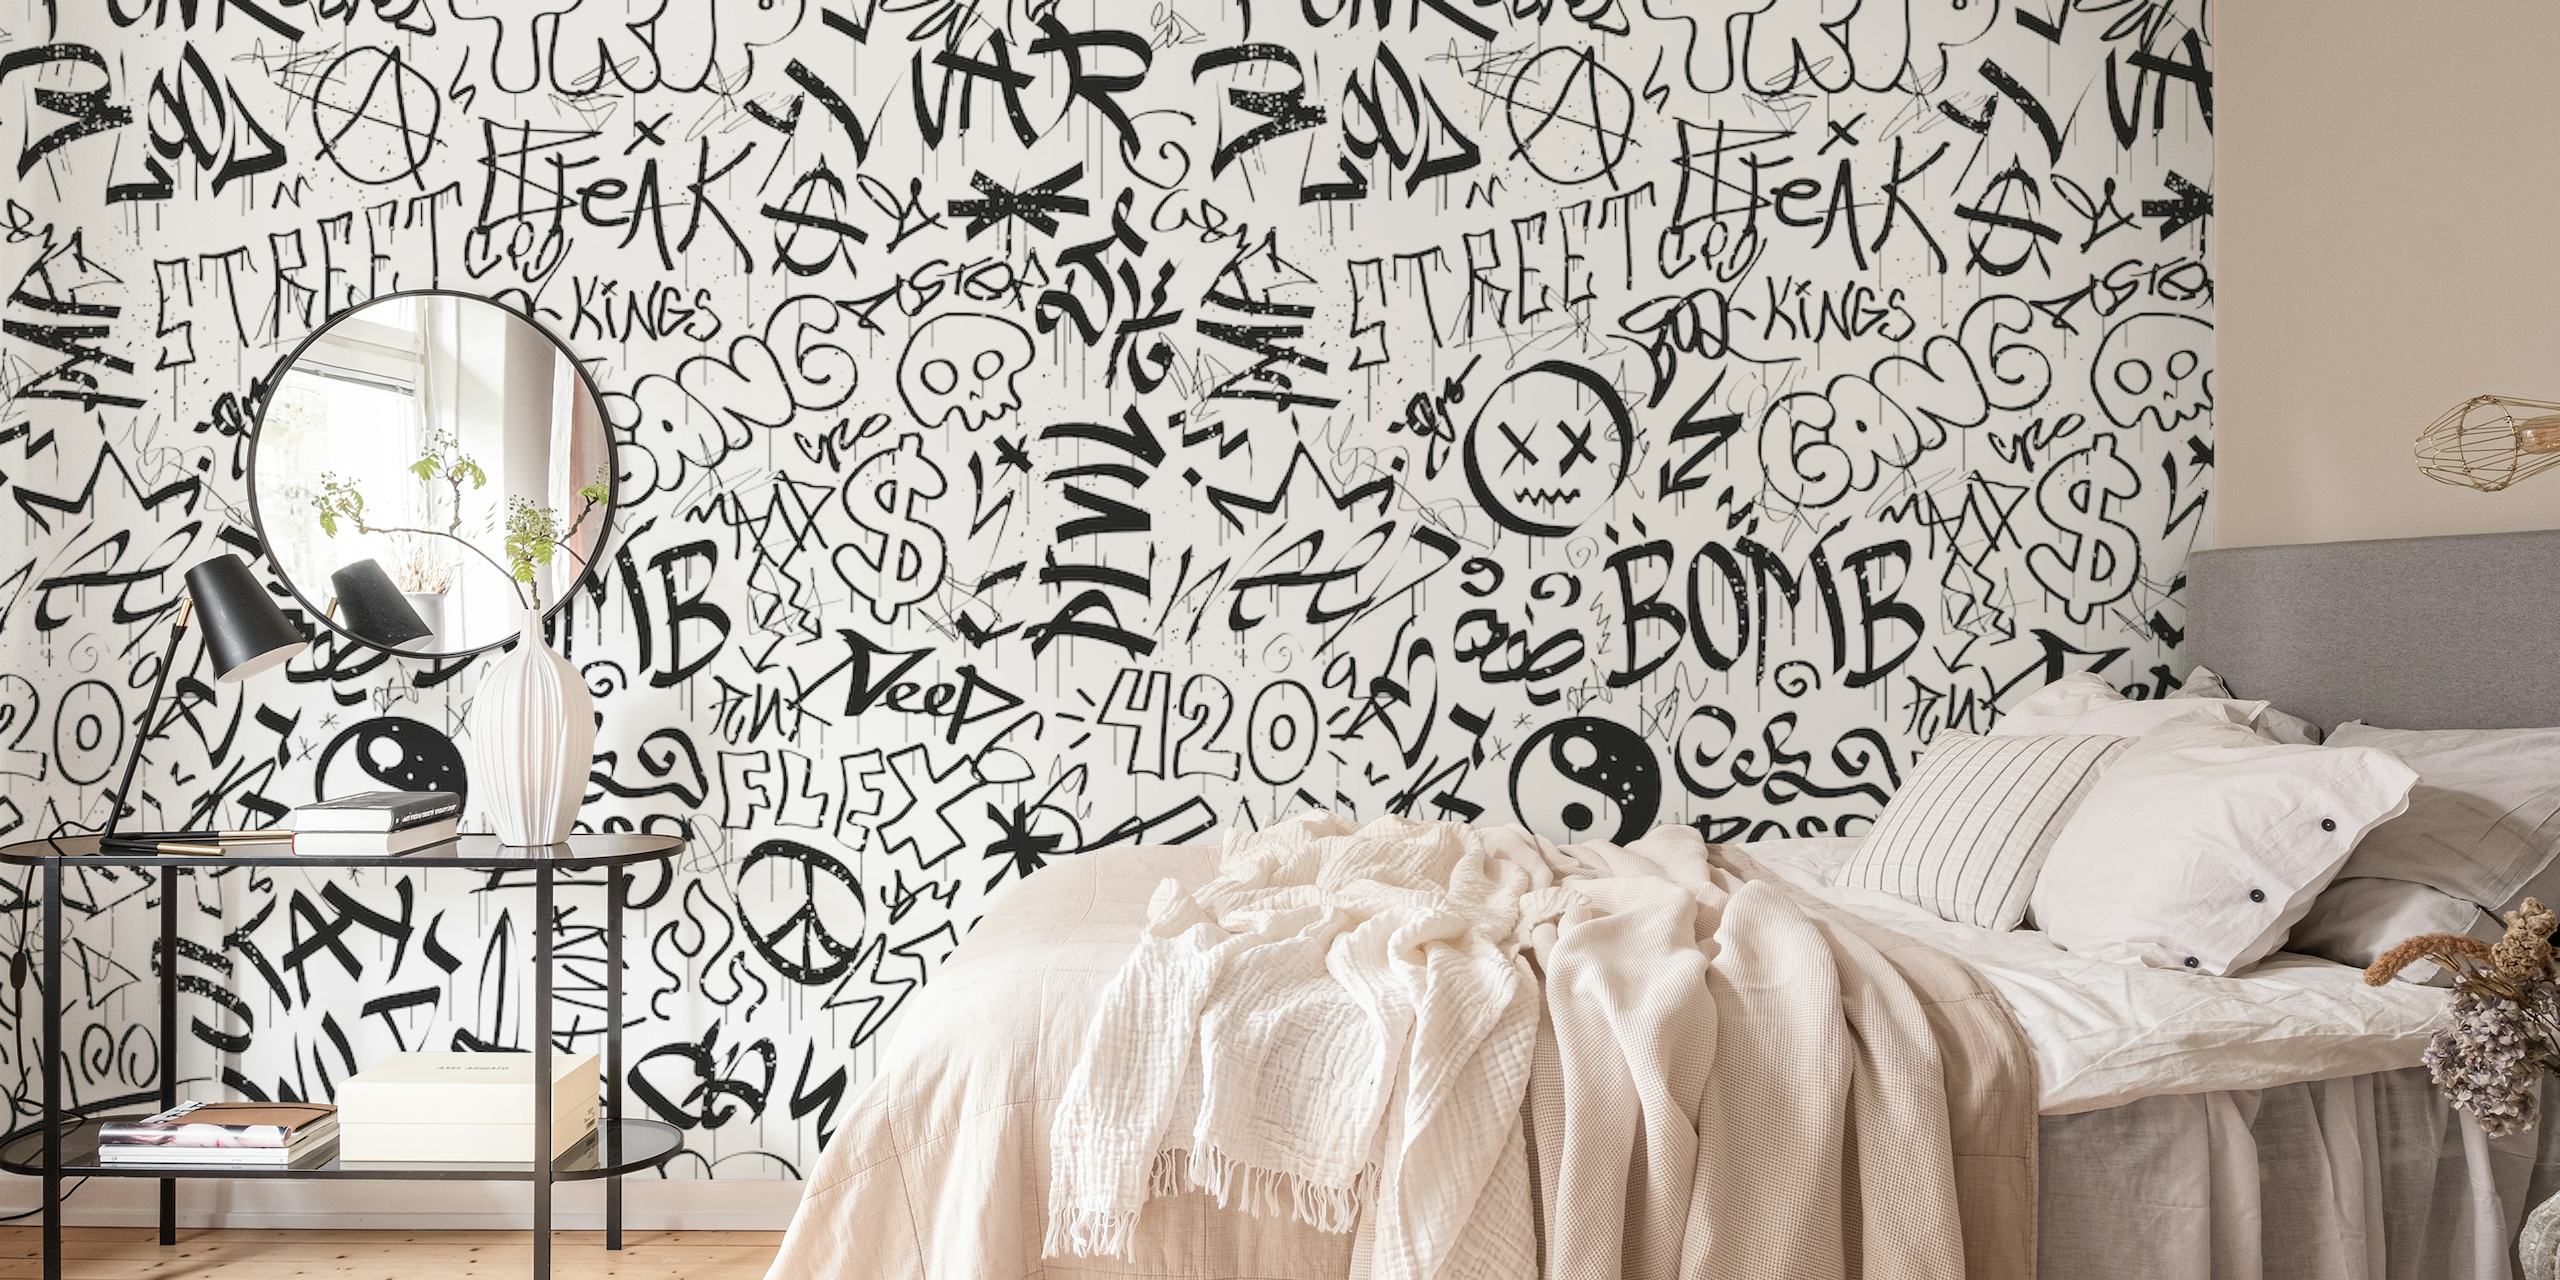 Svart och vit tapet i graffitistil med olika taggar och karaktärer.